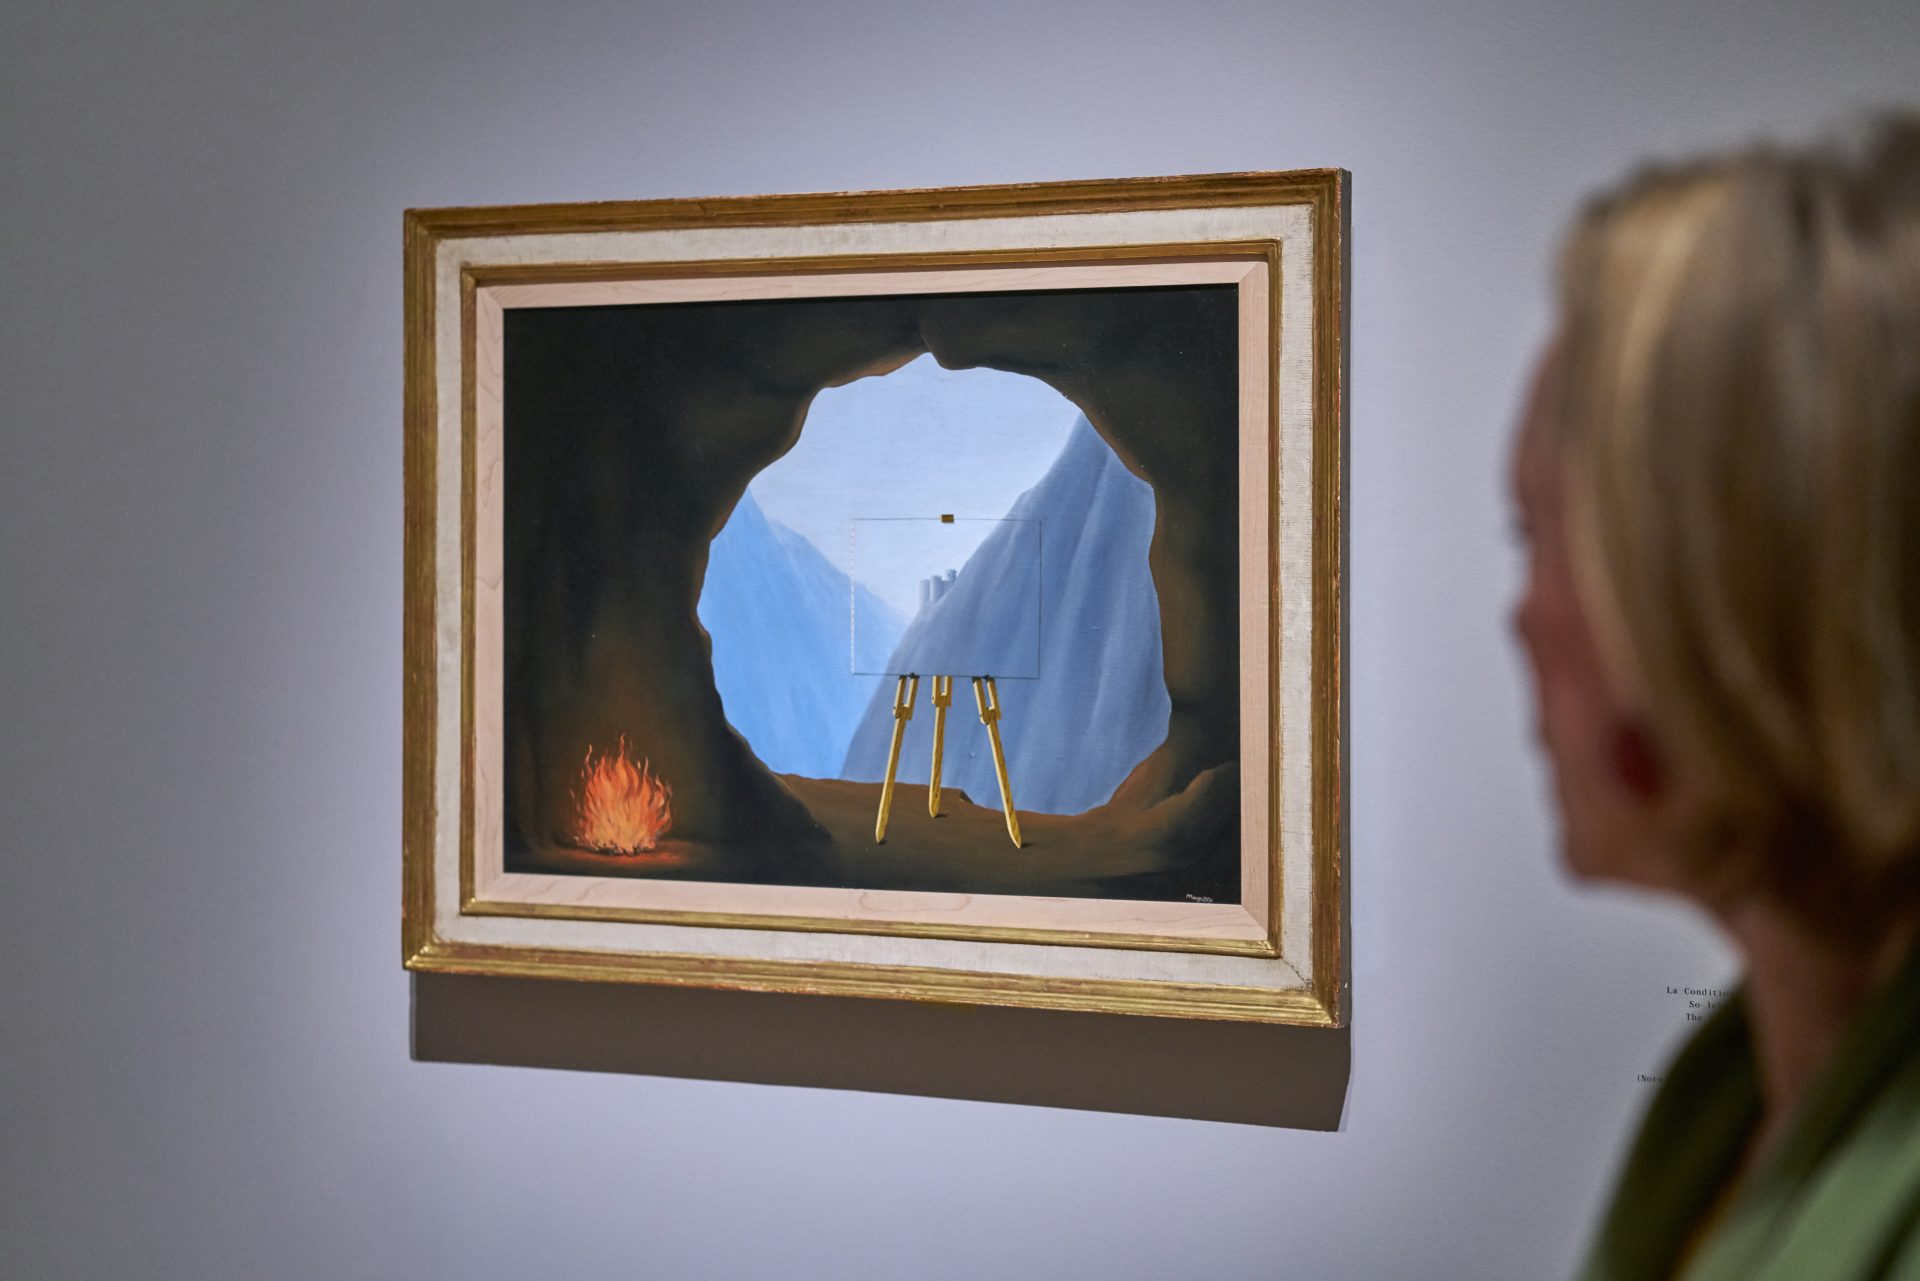 Schirn_Presse_Magritte_Ausstellungsansicht_Norbert_Migulet z_6.jpg MAGRITTE. DER VERRAT DER BILDER, Ausstellungsansicht © Schirn Kunsthalle Frankfurt, 2017, Foto: Norbert Miguletz